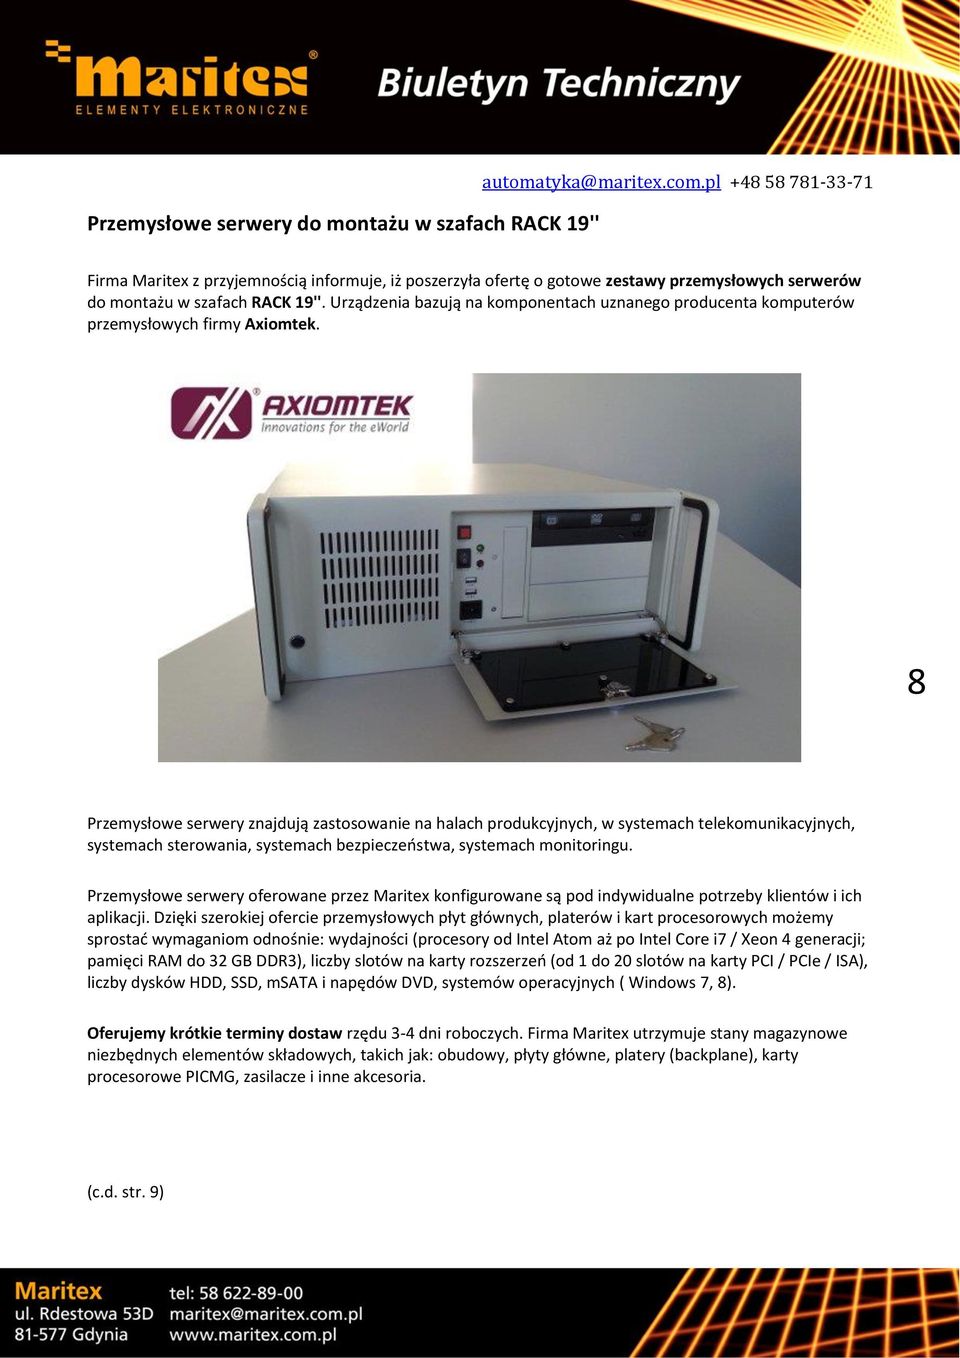 Urządzenia bazują na komponentach uznanego producenta komputerów przemysłowych firmy Axiomtek.